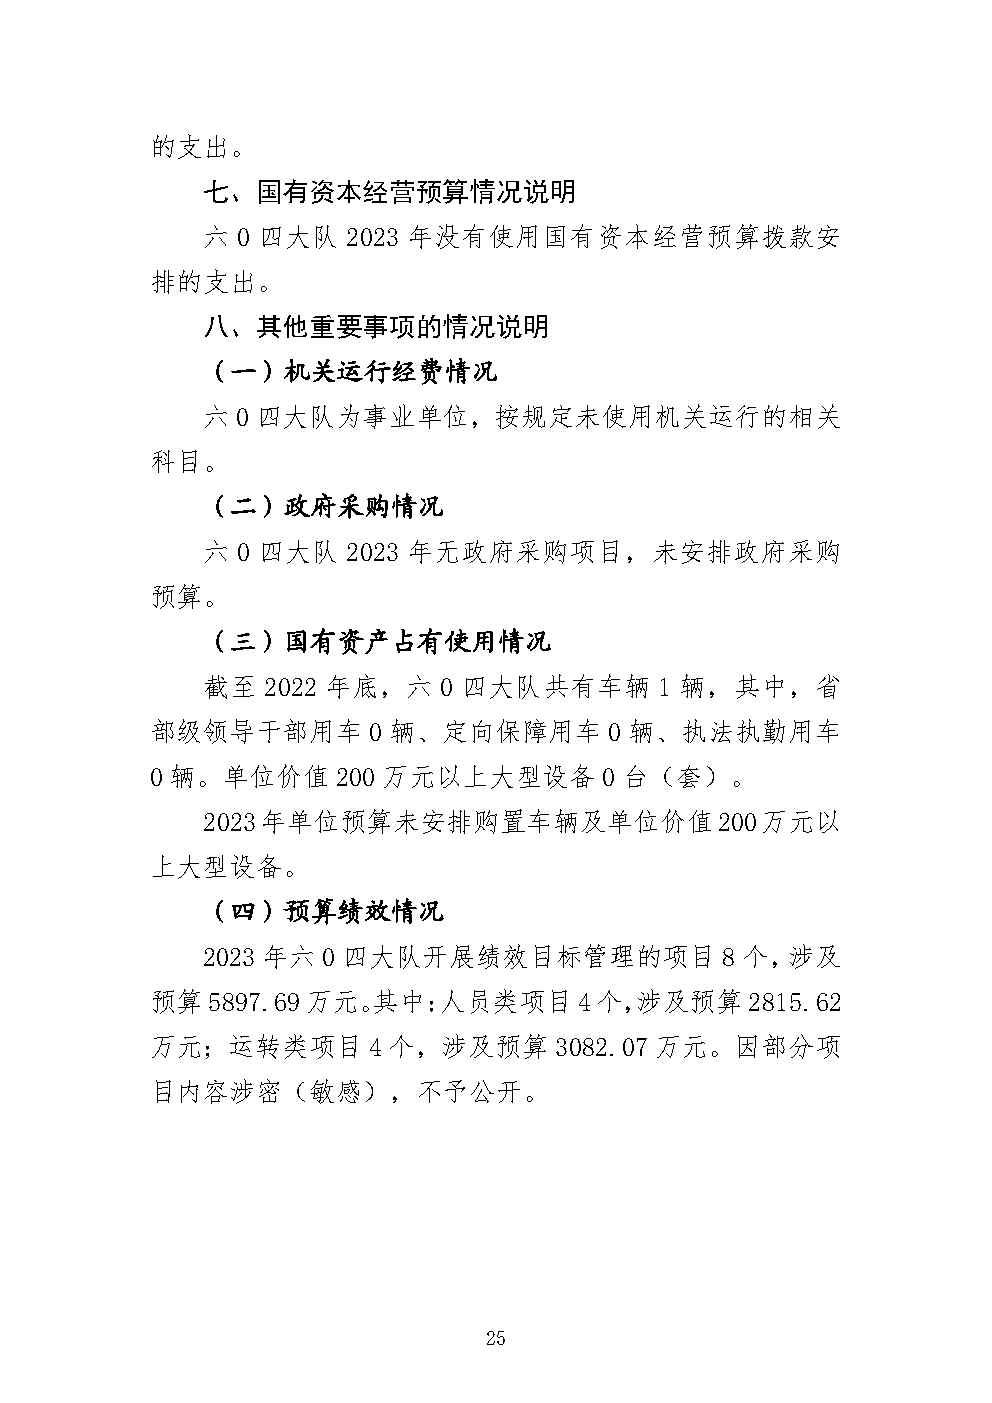 四川省冶金地质勘查局六〇四大队2023年单位预算